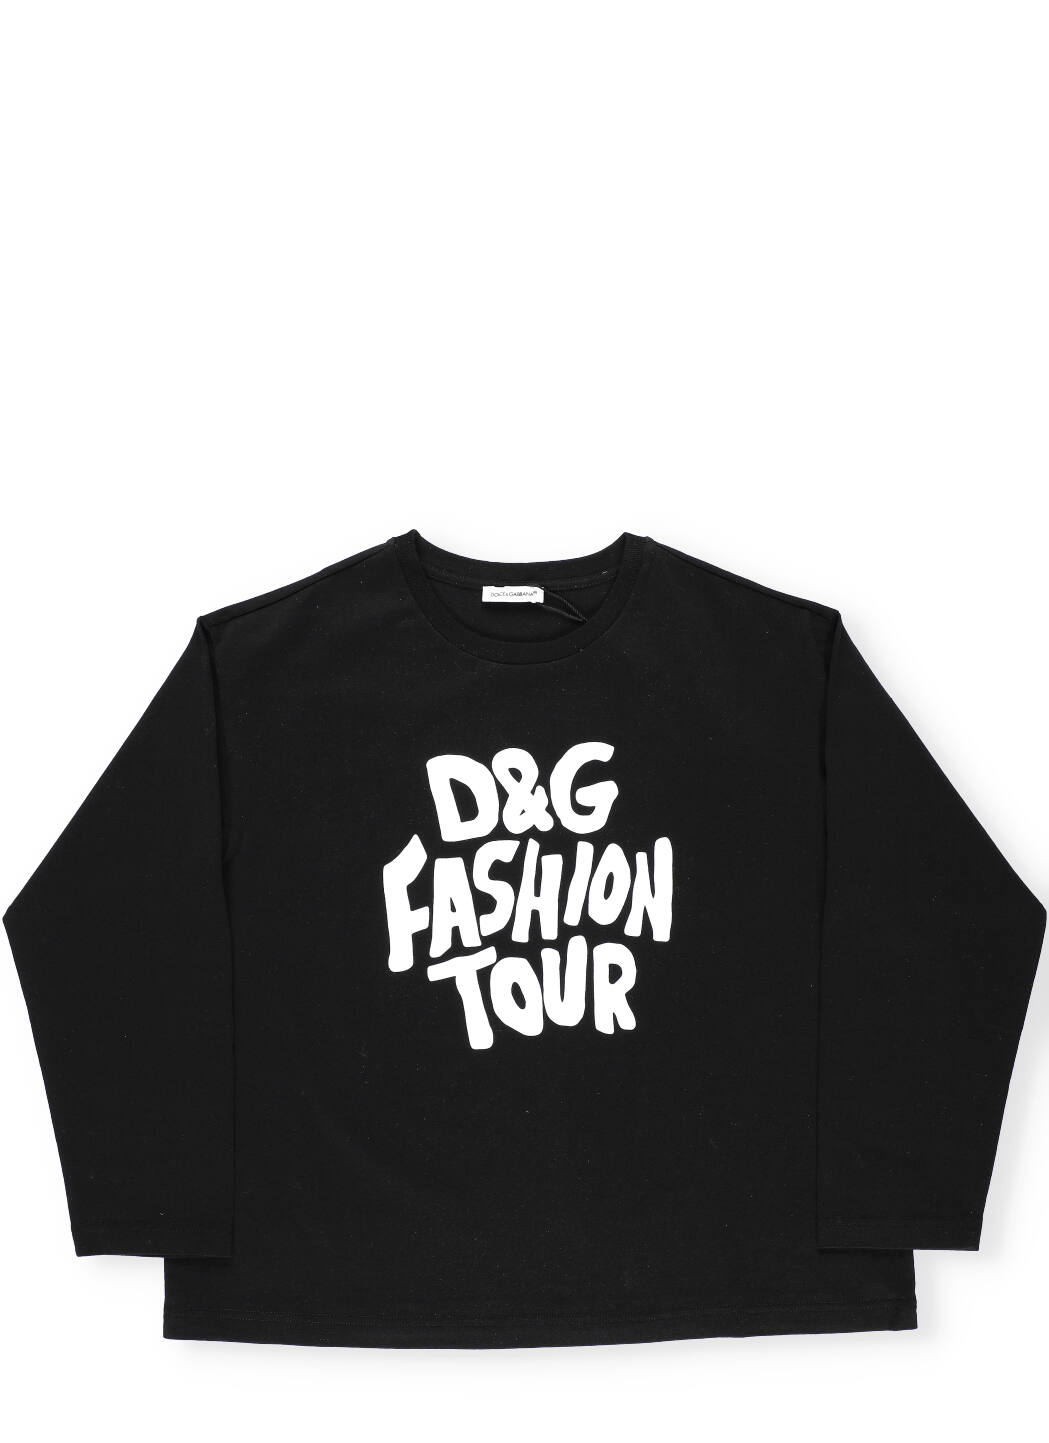 Dolce & Gabbana Dg Fashion Tour Sweater